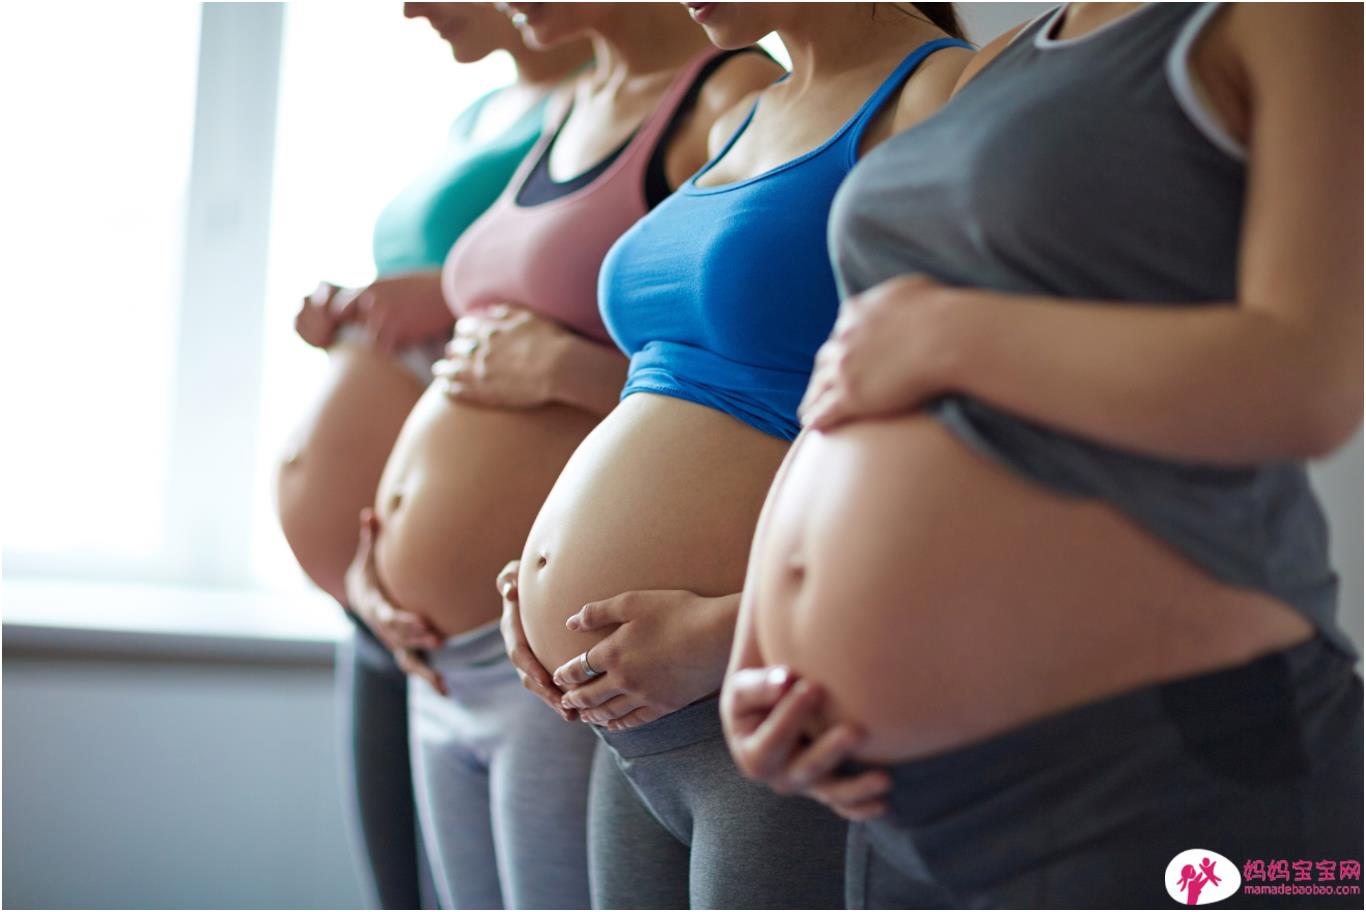 孕肚不明显有问题吗？妇产科医师强调：「胎儿健康跟孕肚大小无关」